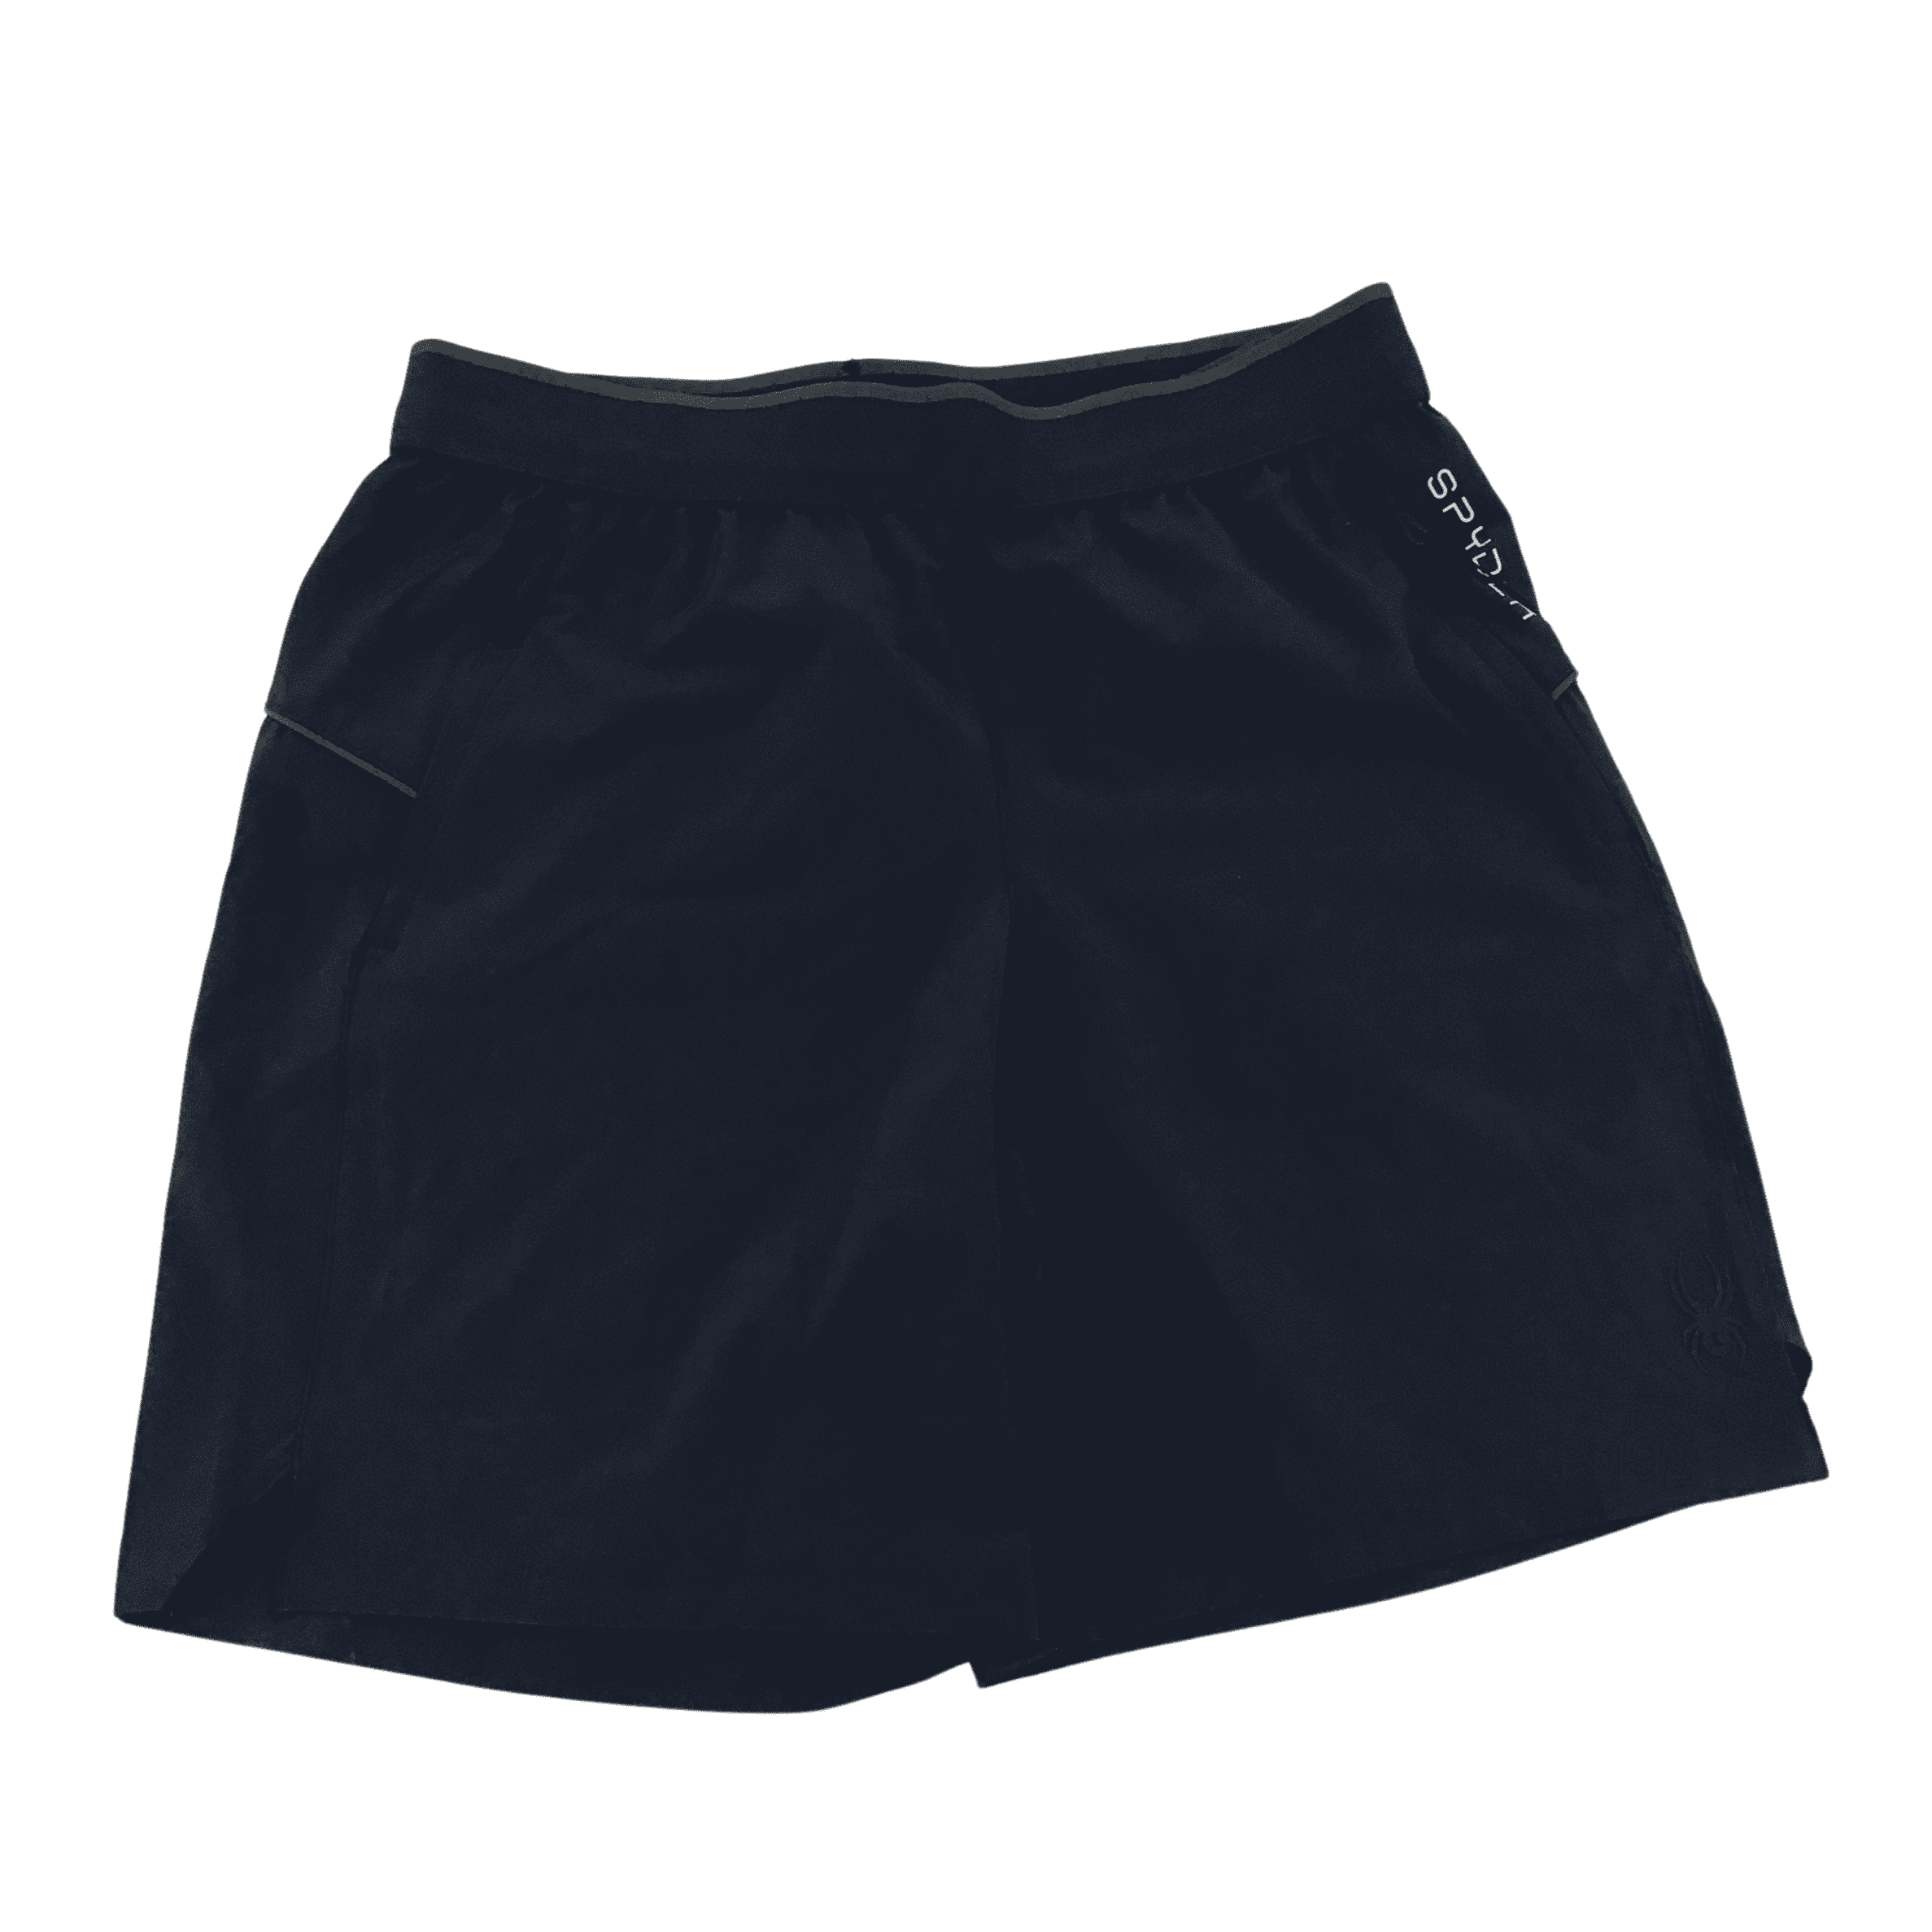 Spyder: Men's Athletic Shorts / Navy / Medium